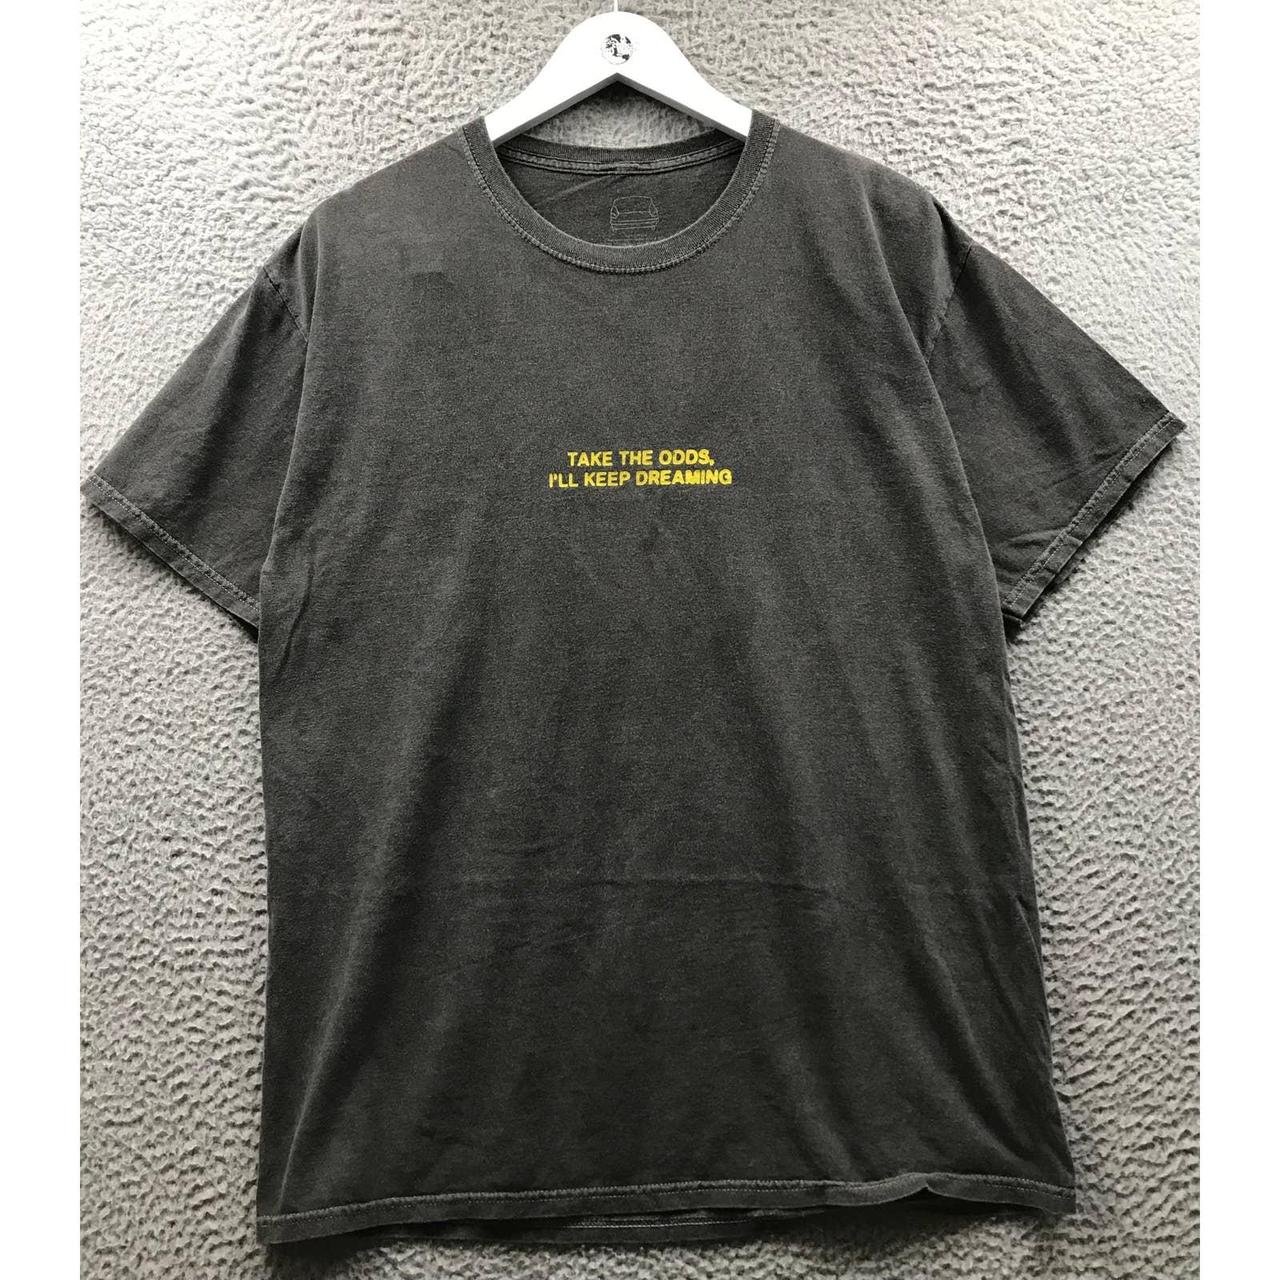 Brockhampton Men's Grey and Yellow T-shirt (4)